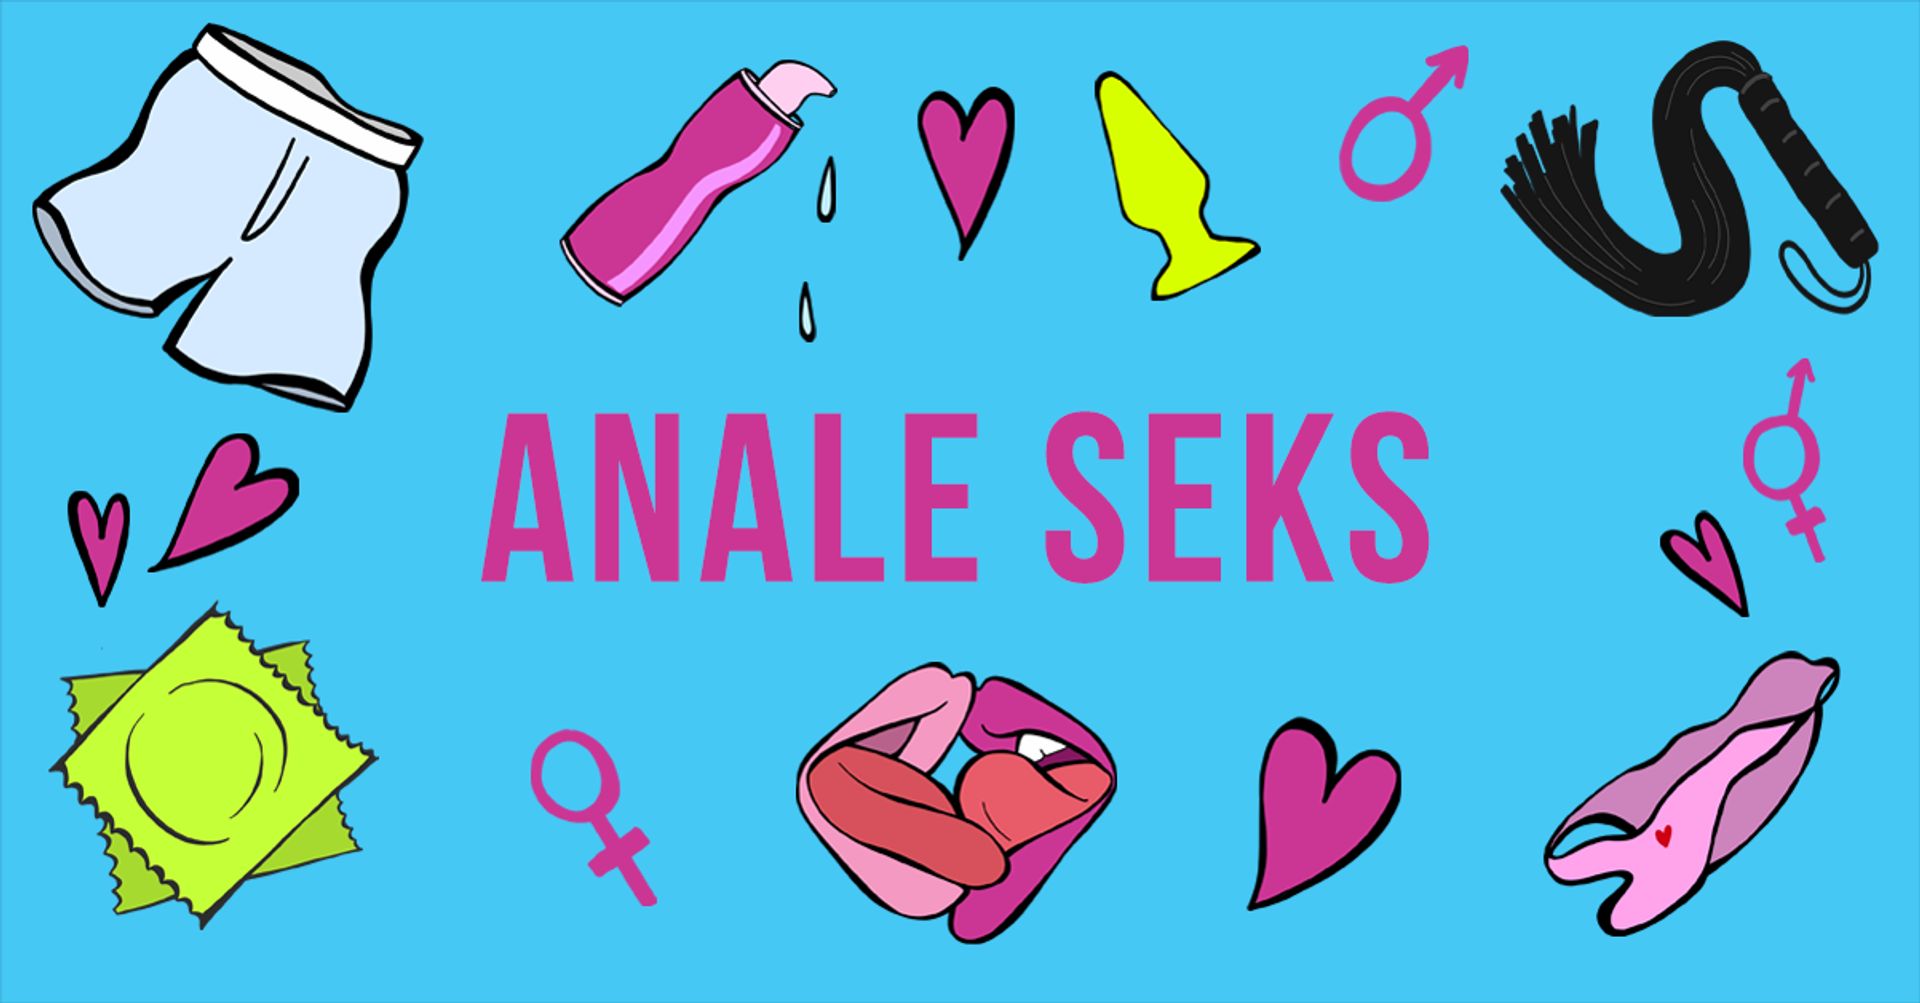 Anale seks - Seks and Drugs woordenboek - Spuiten en Slikken foto